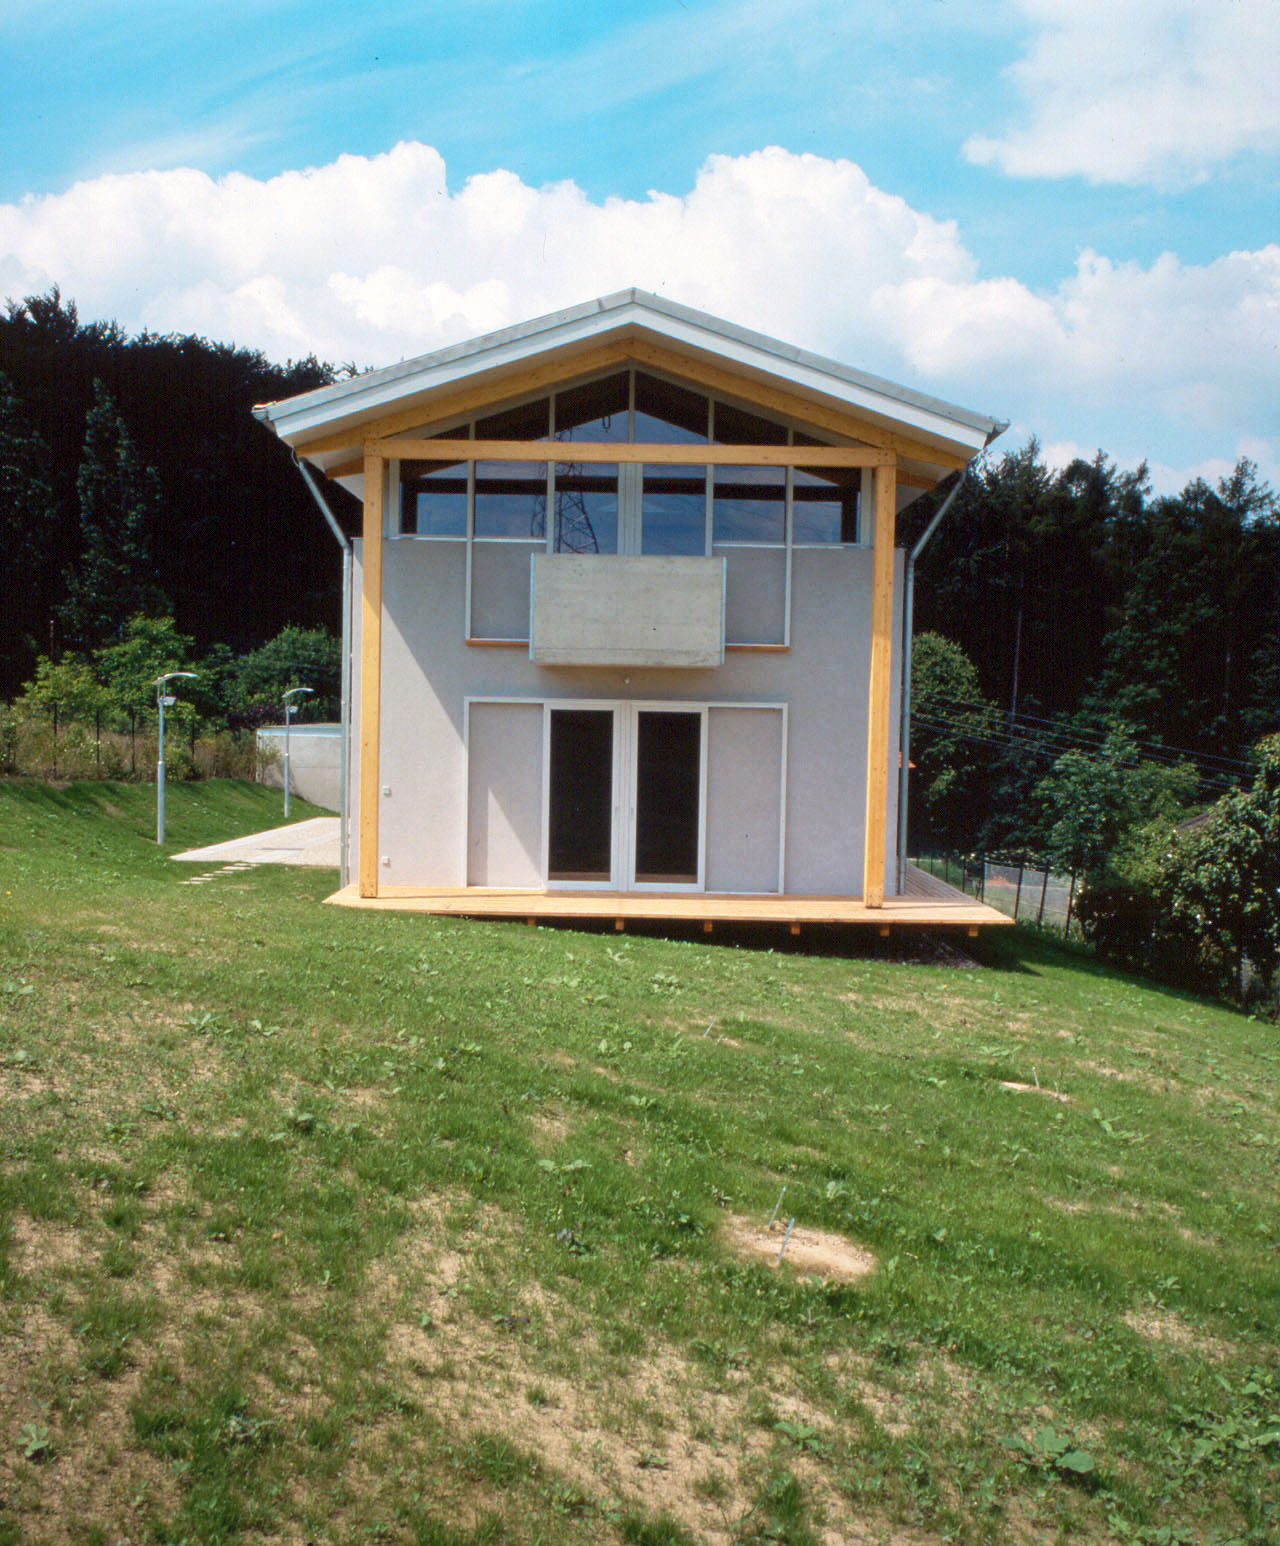 <p>© RUNSER / PRANTL architekten, Haus am Hang, 3413 Hintersdorf, Niederösterreich, Österreich,1994, Wohnhaus, Wohnung, Fotograf Margherita Spiluttini</p>